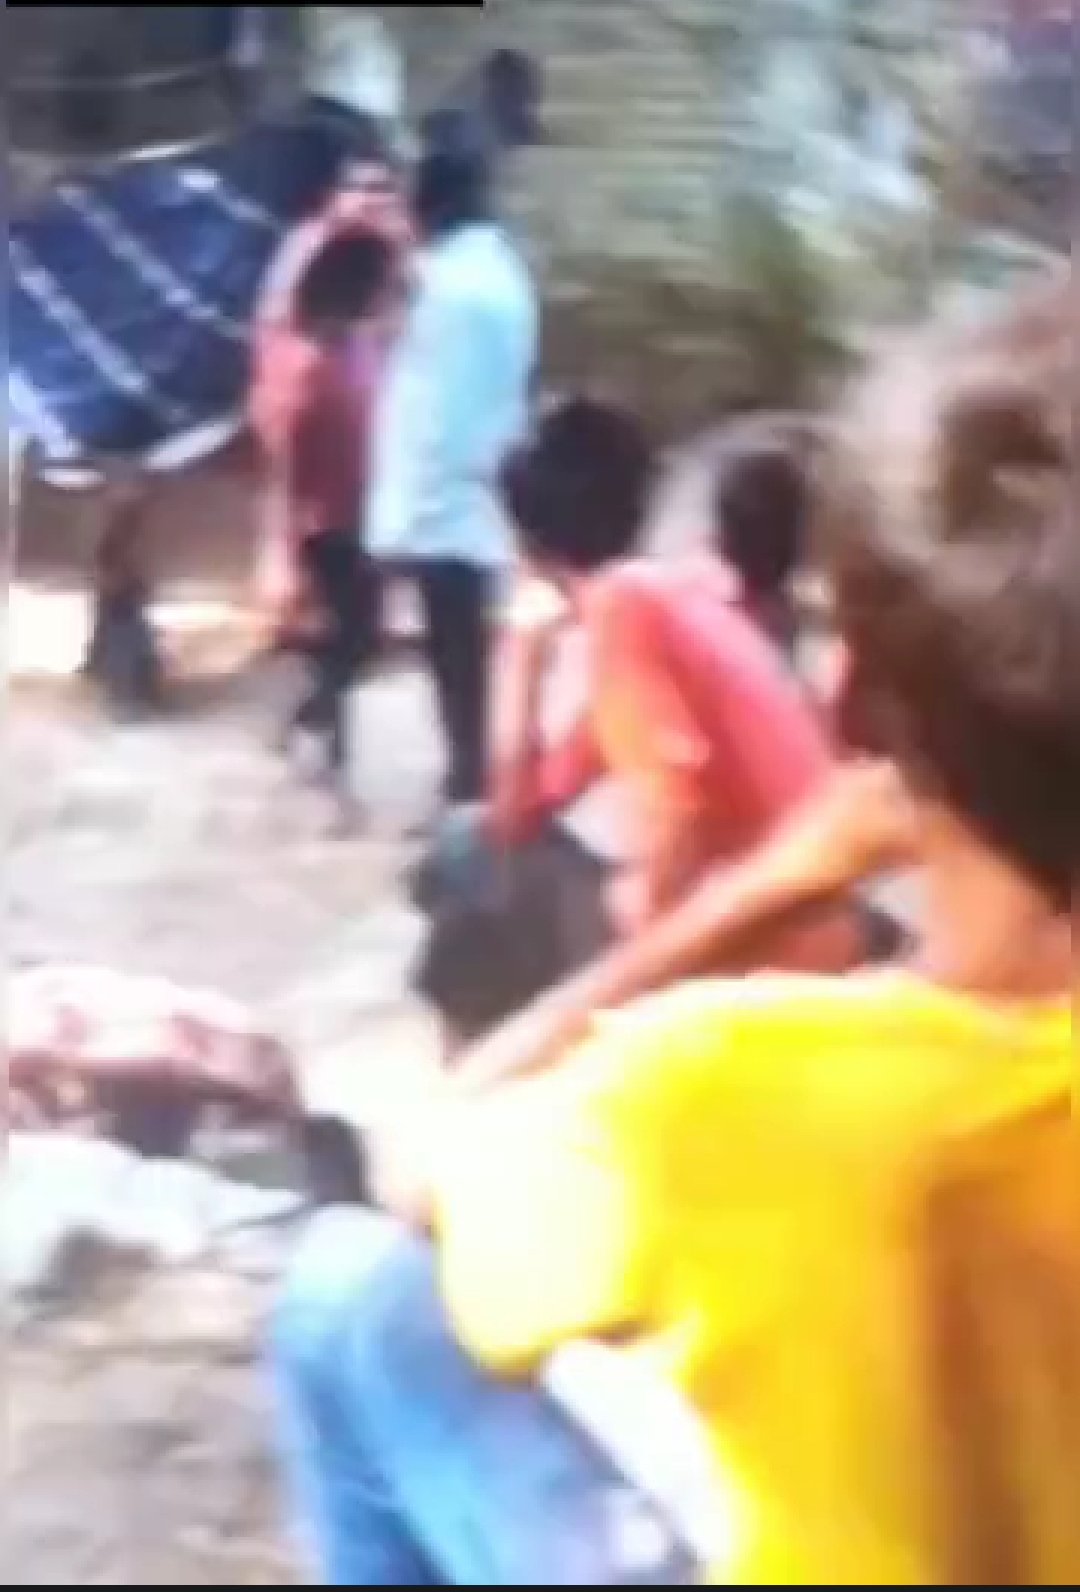 डलमऊ में पुरानी रंजिश में मारपीट:गाली गलौज के विरोध में चले लाठी डंडे,पुलिस ने नही की कार्रवाई